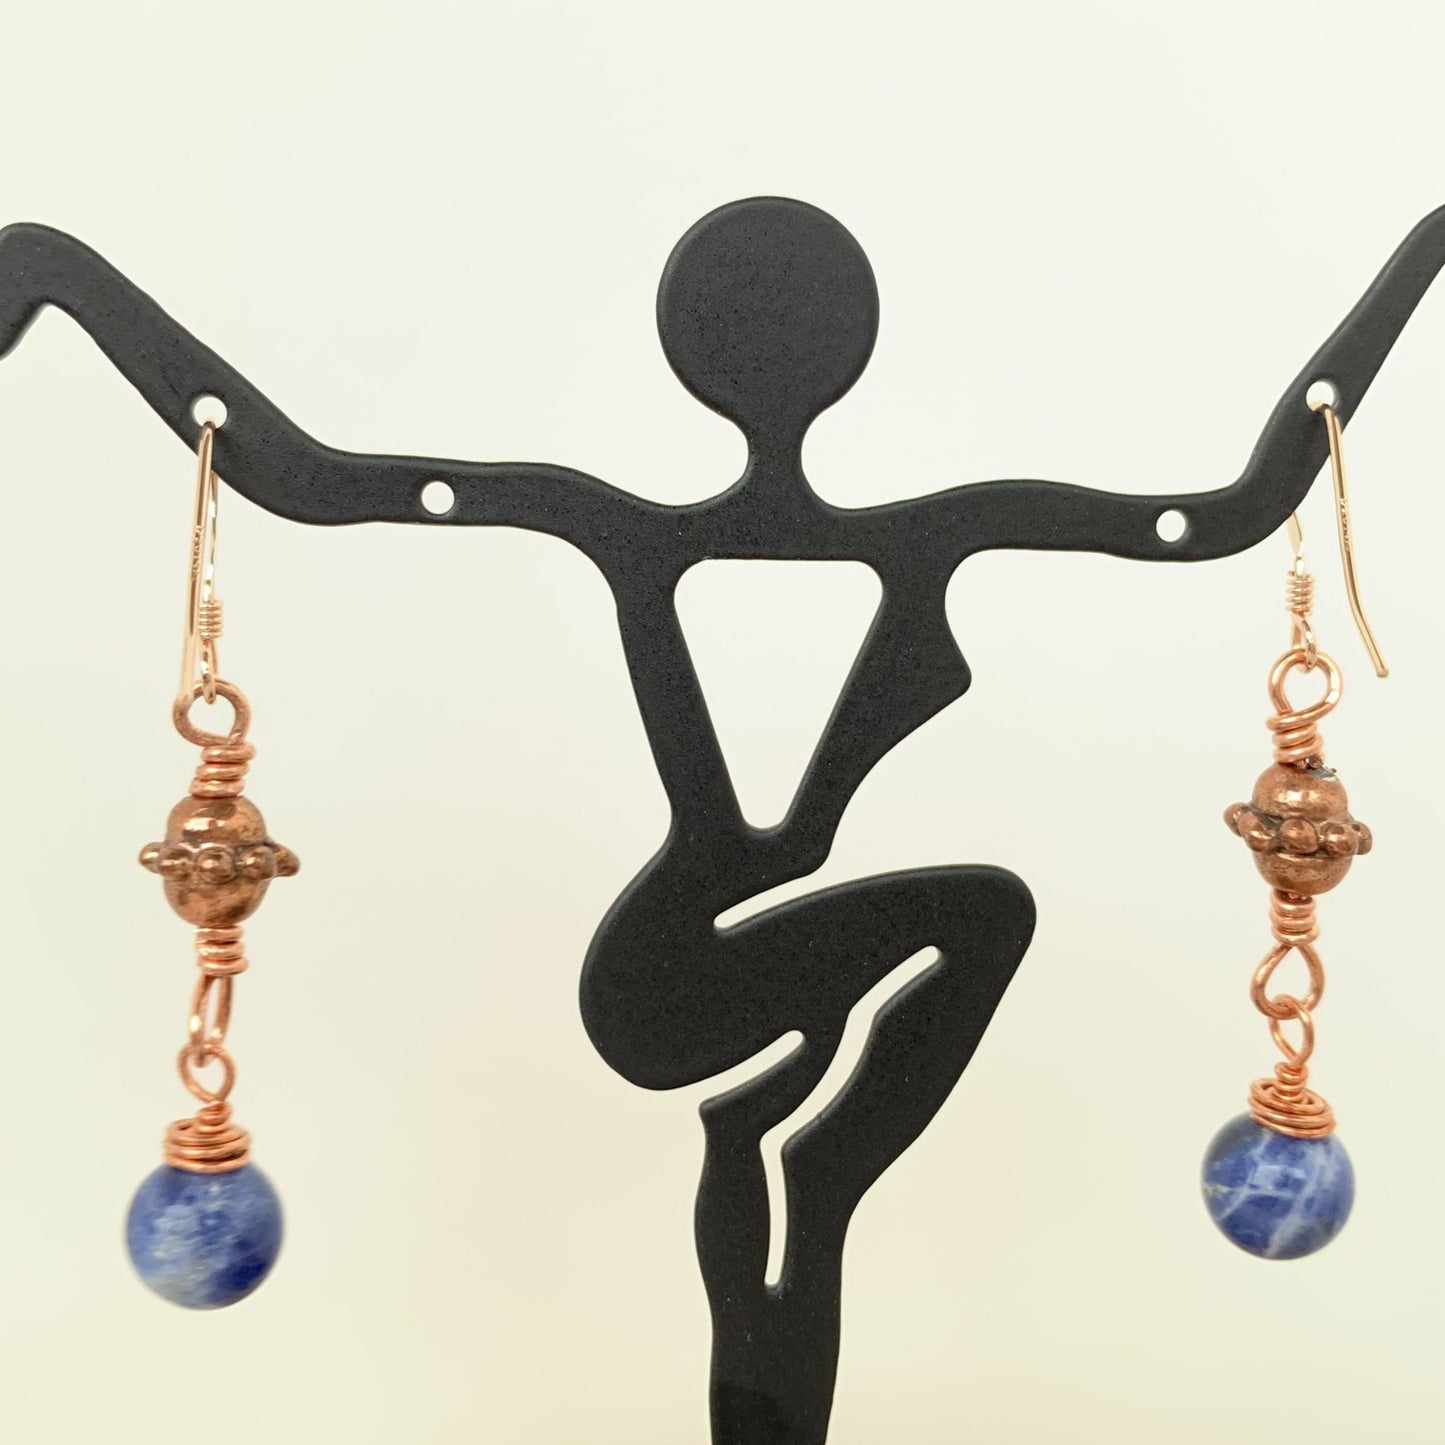 Brazilian Sodalite dangle copper earrings